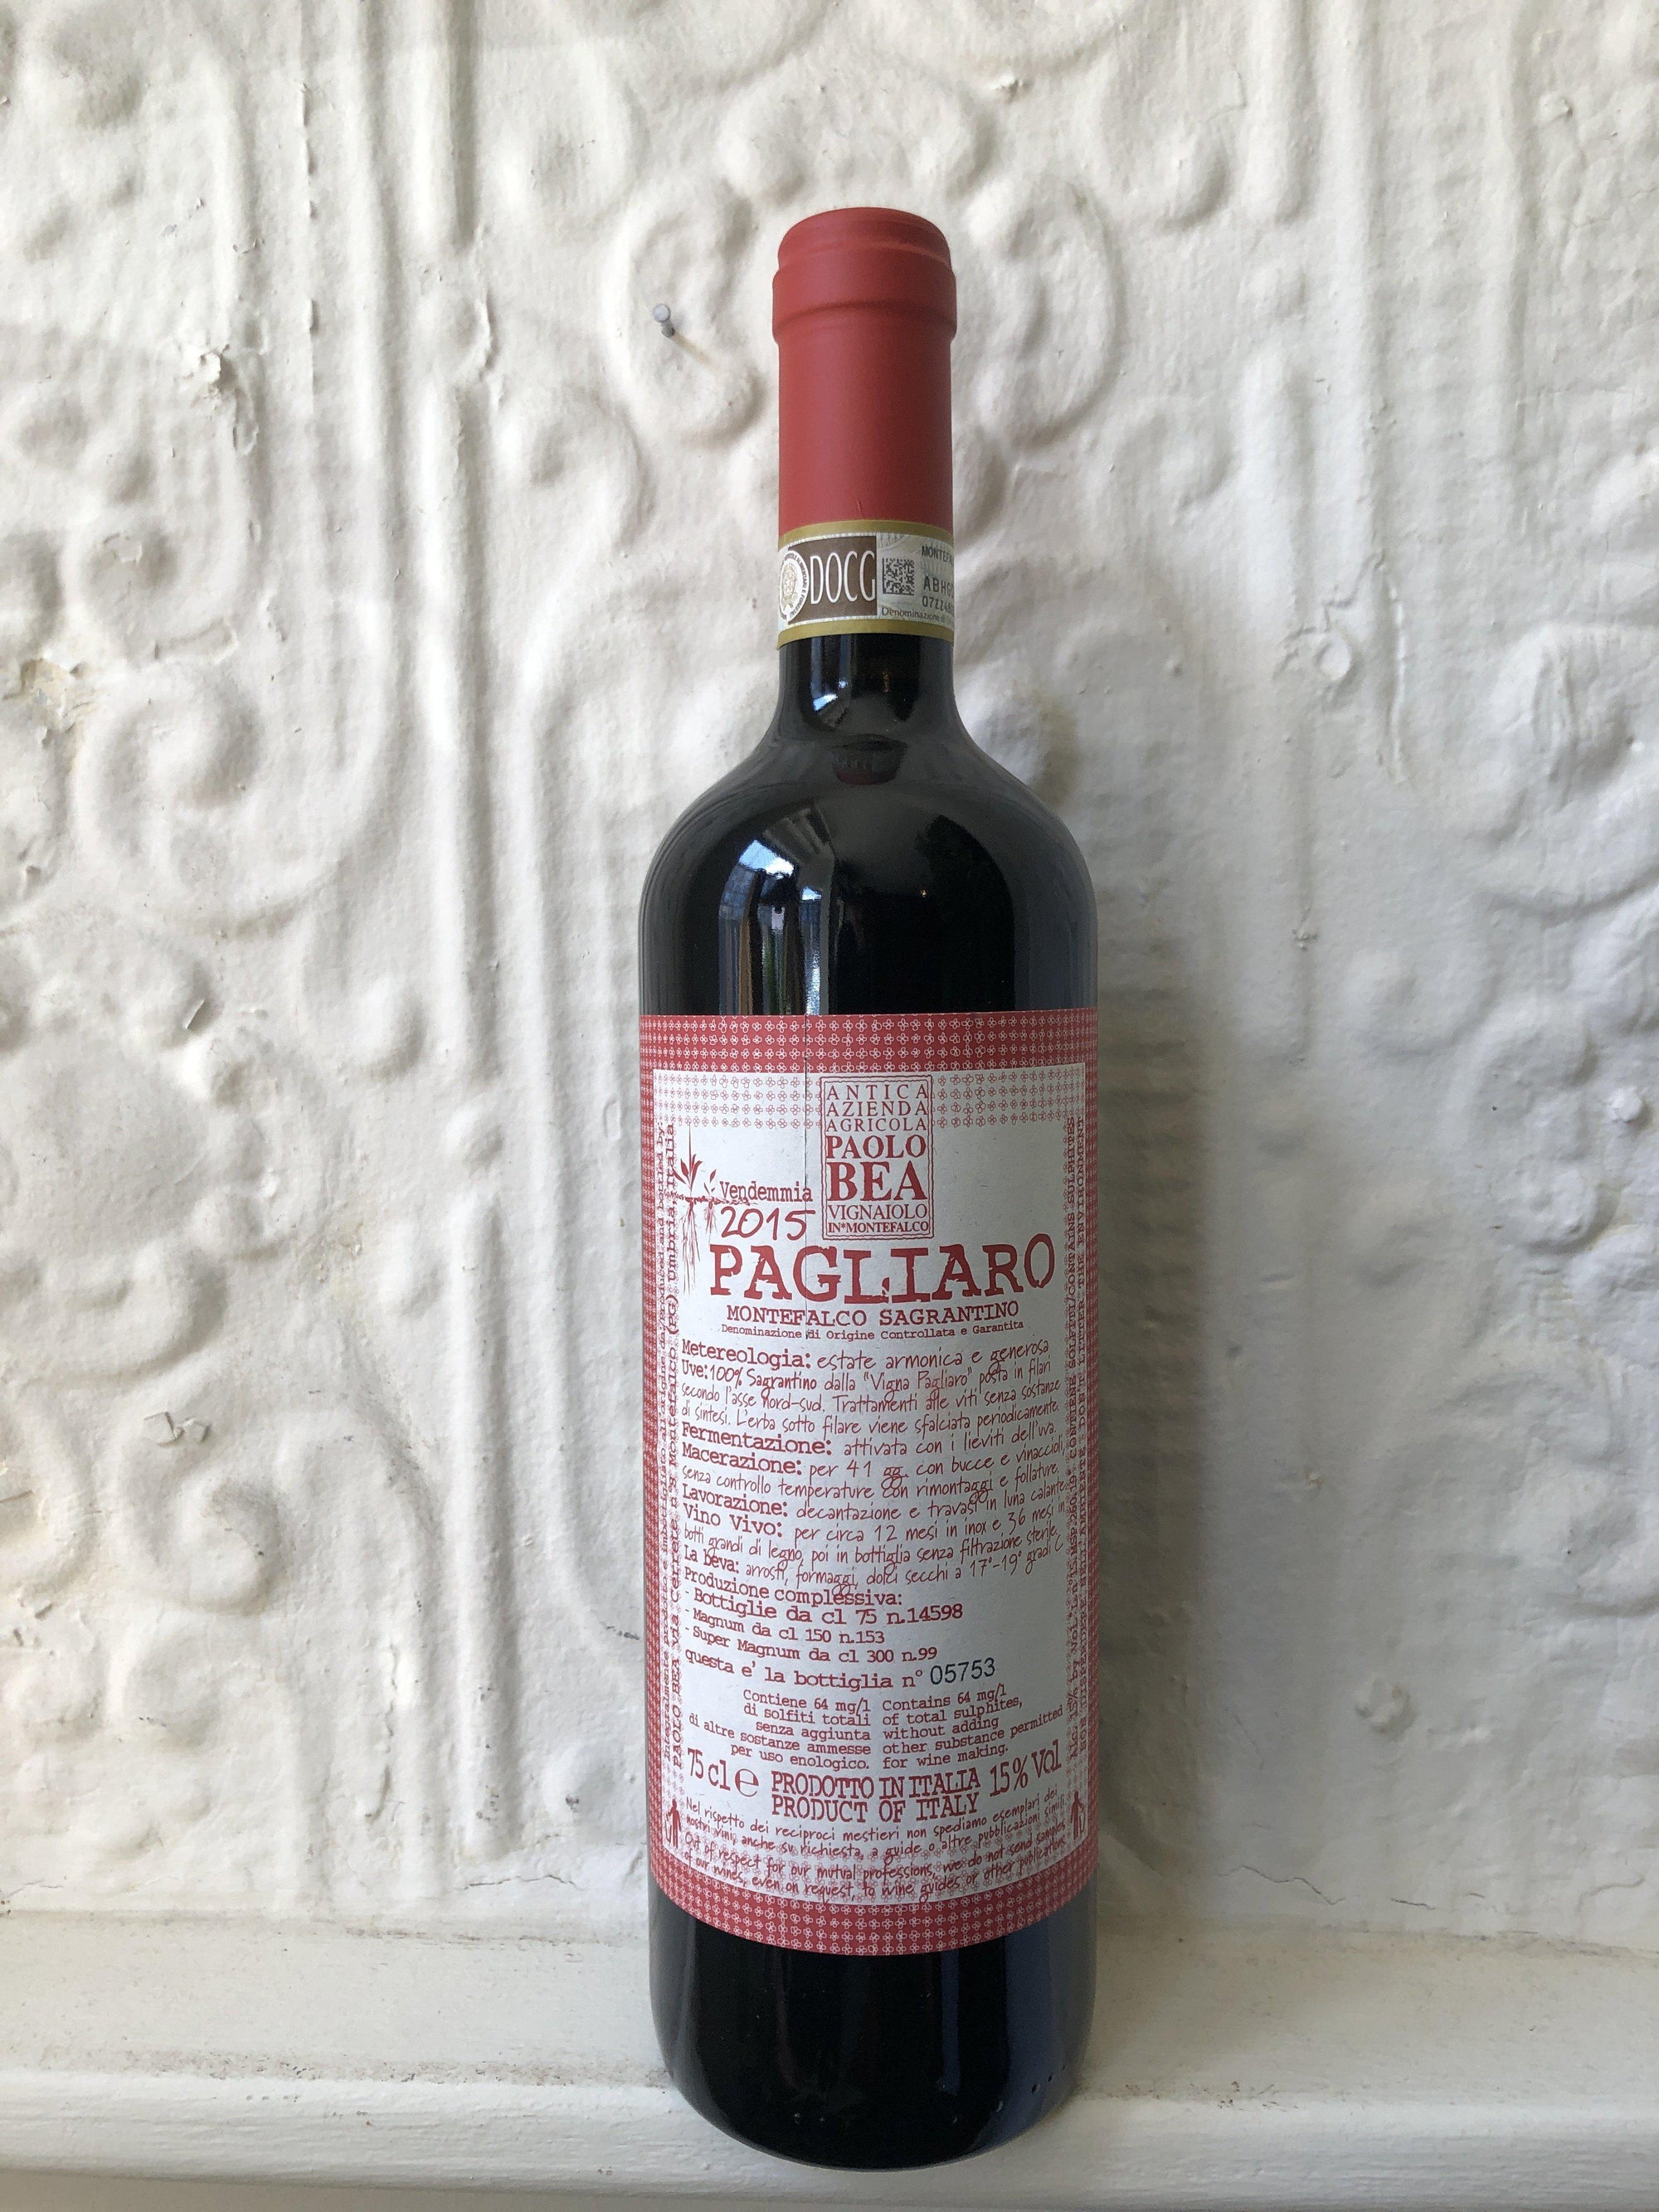 Montefalco Sagrantino "Pagliaro", Paolo Bea '15 (Umbria, Italy)-Wine-Bibber & Bell